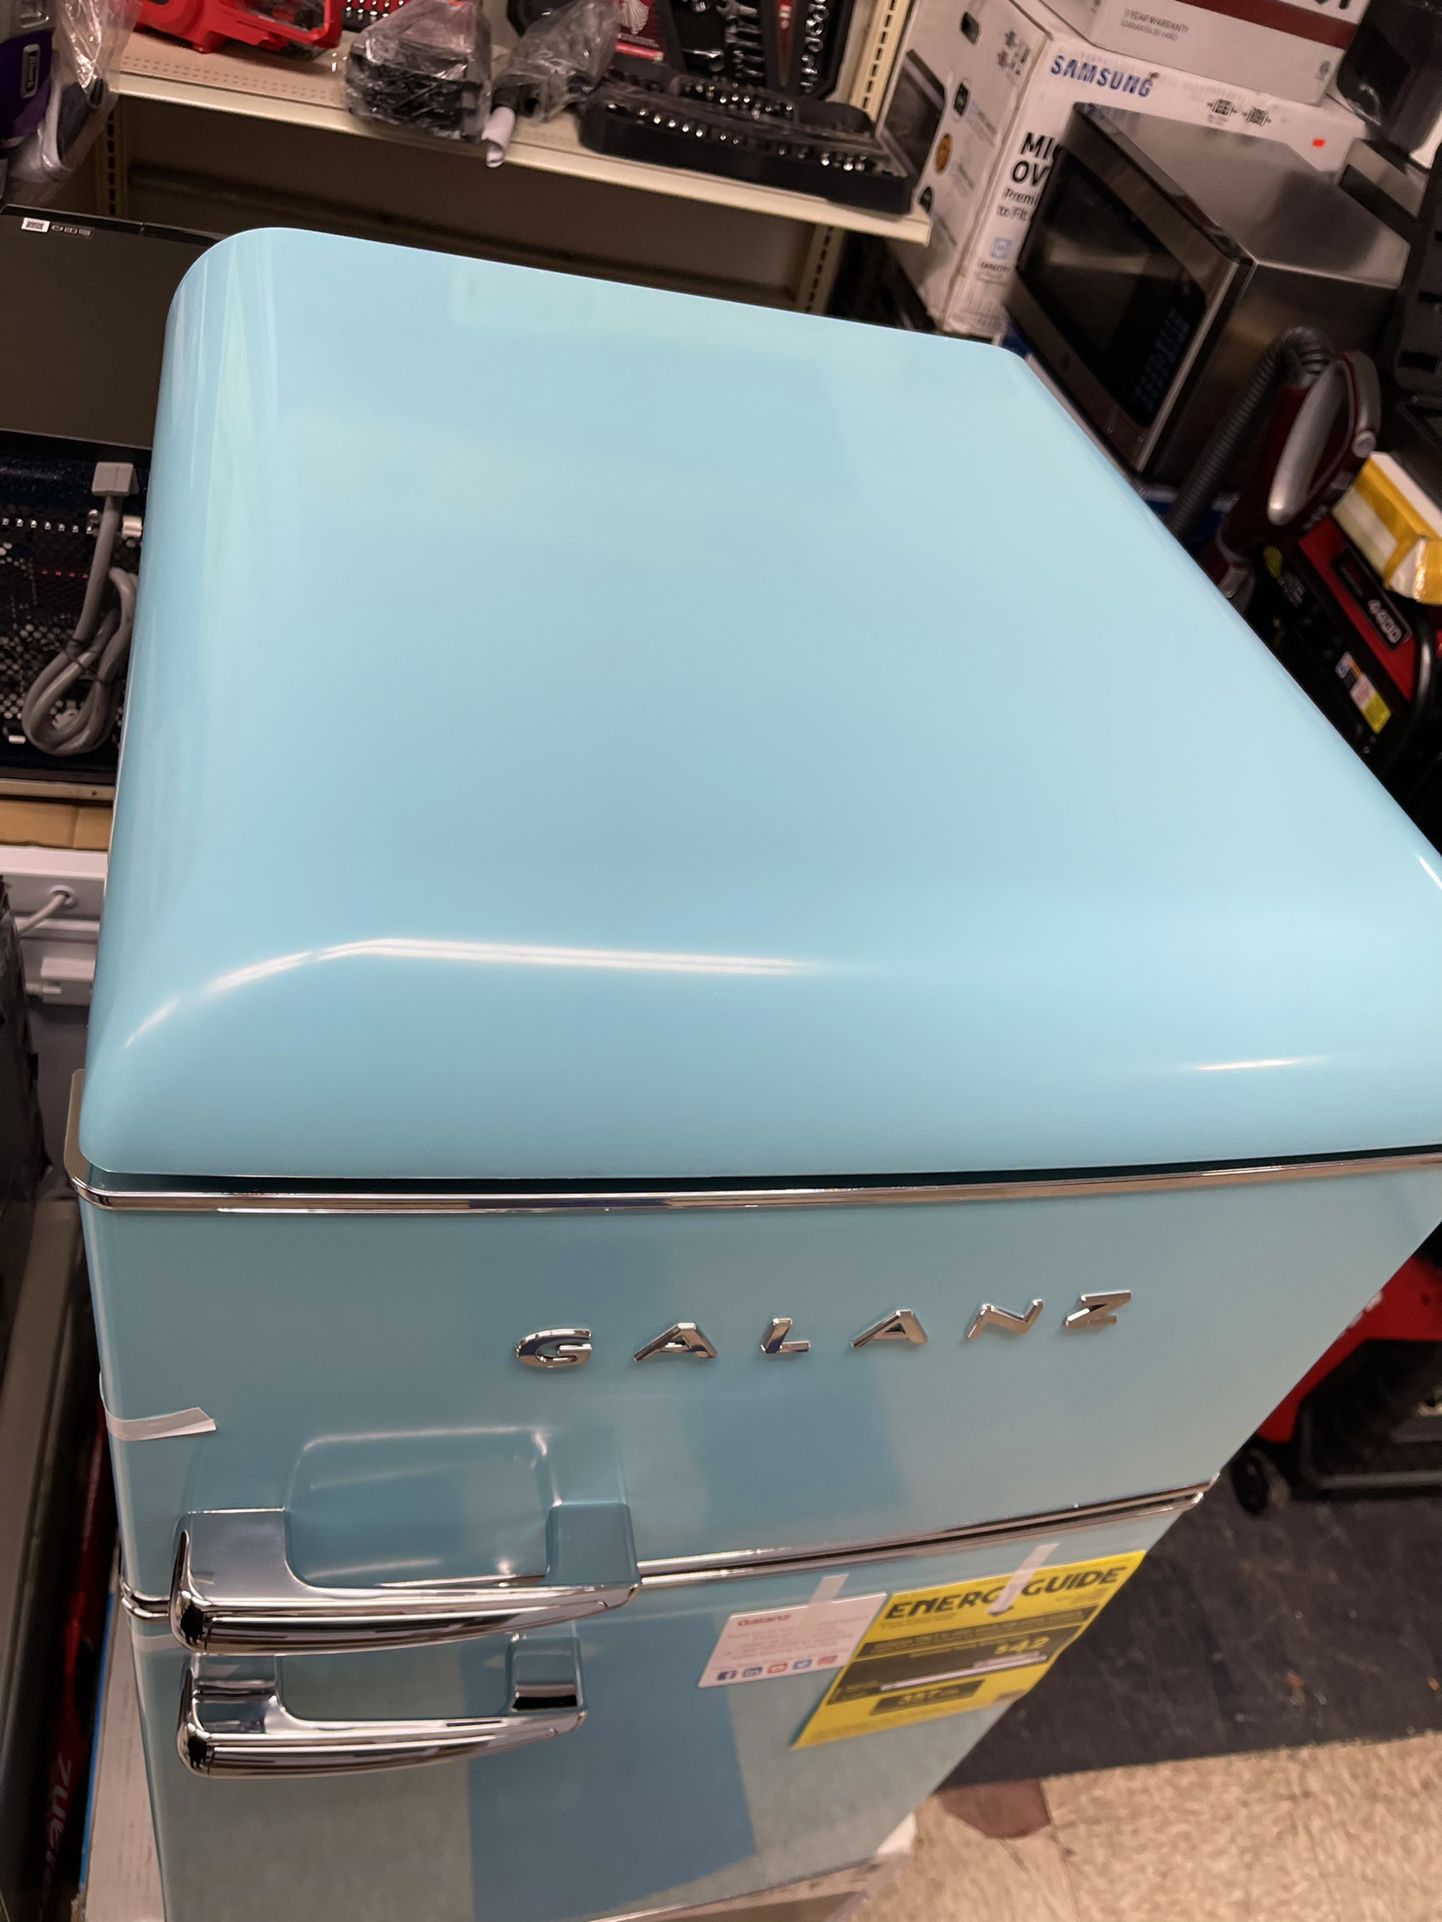 Galanz Retro Refrigerator for Sale in Miami, FL - OfferUp